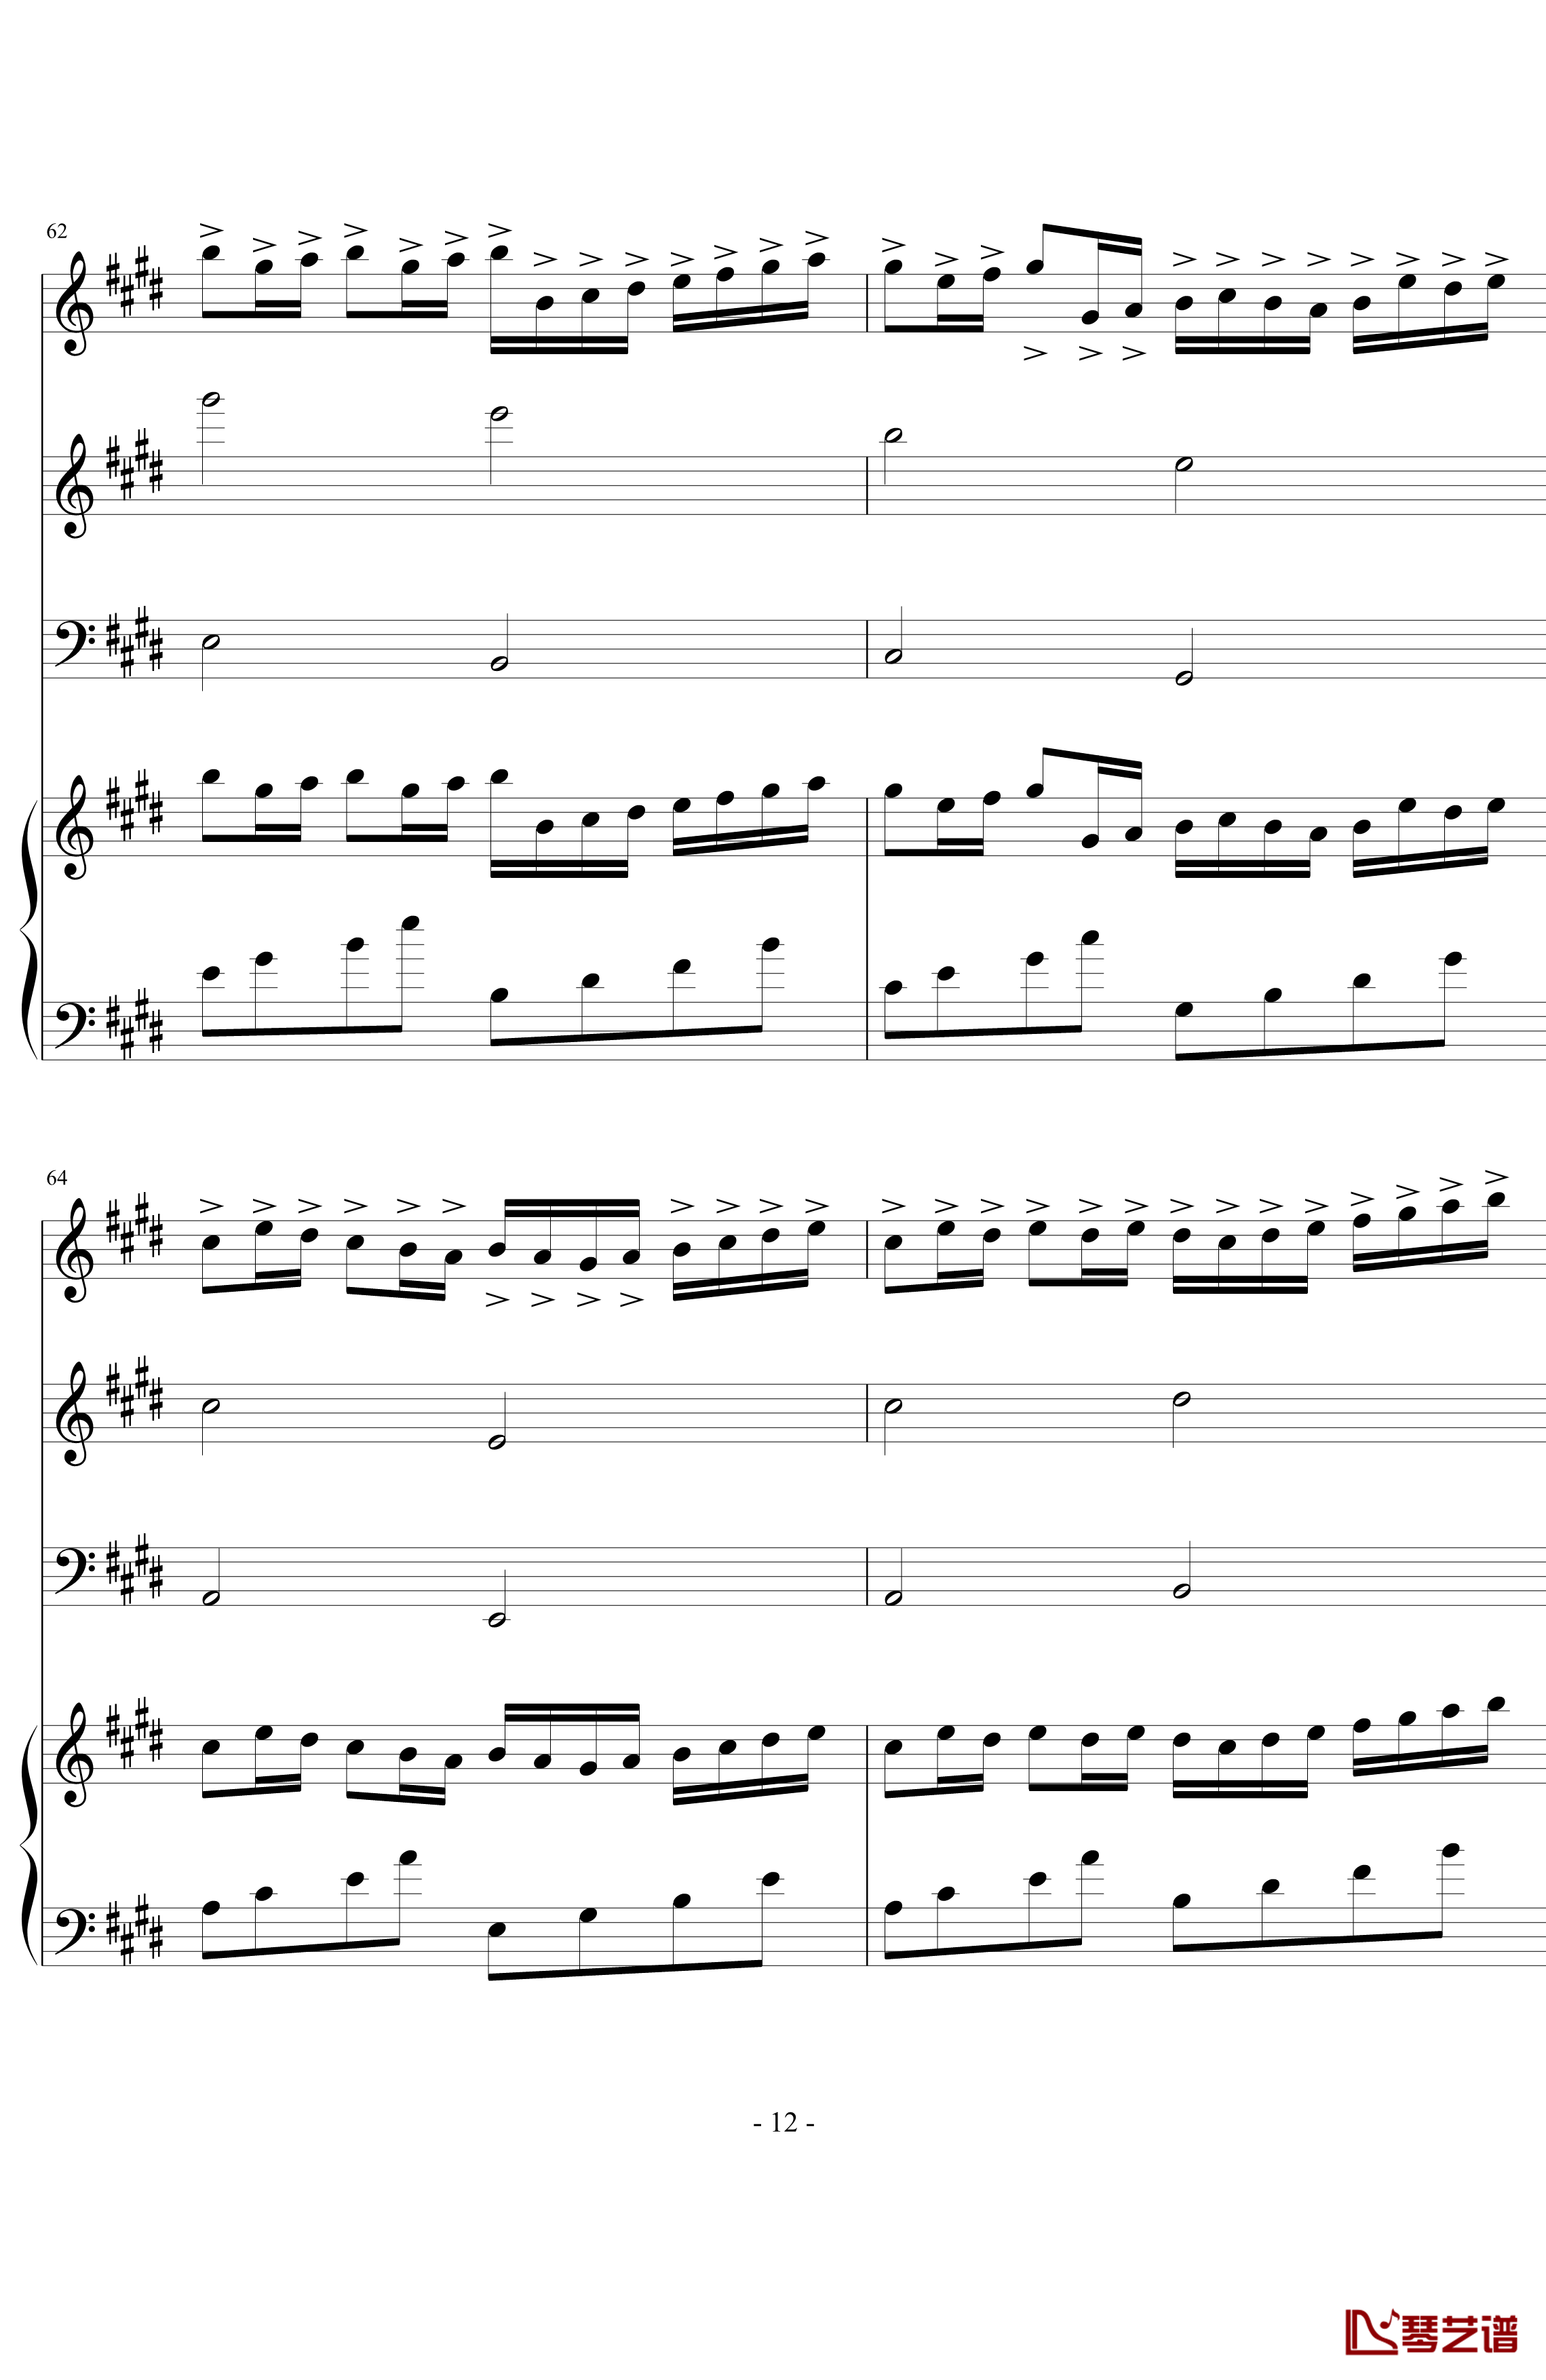 卡农森林版钢琴谱-帕赫贝尔-Pachelbel12